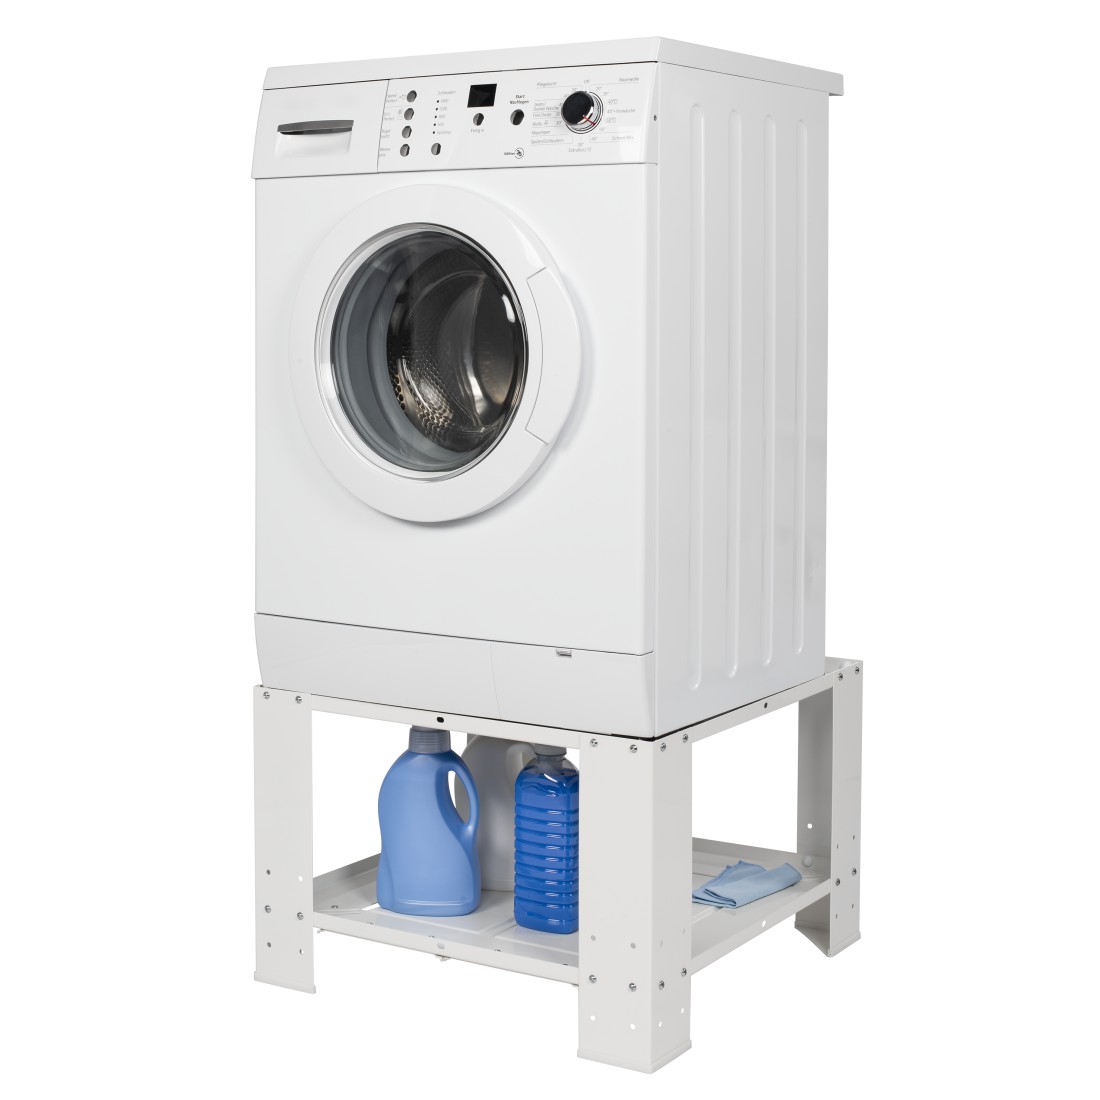 awx Druckfähige Anwendung - Xavax, Universalsockel für Waschmaschine und Trockner mit Ablagefach